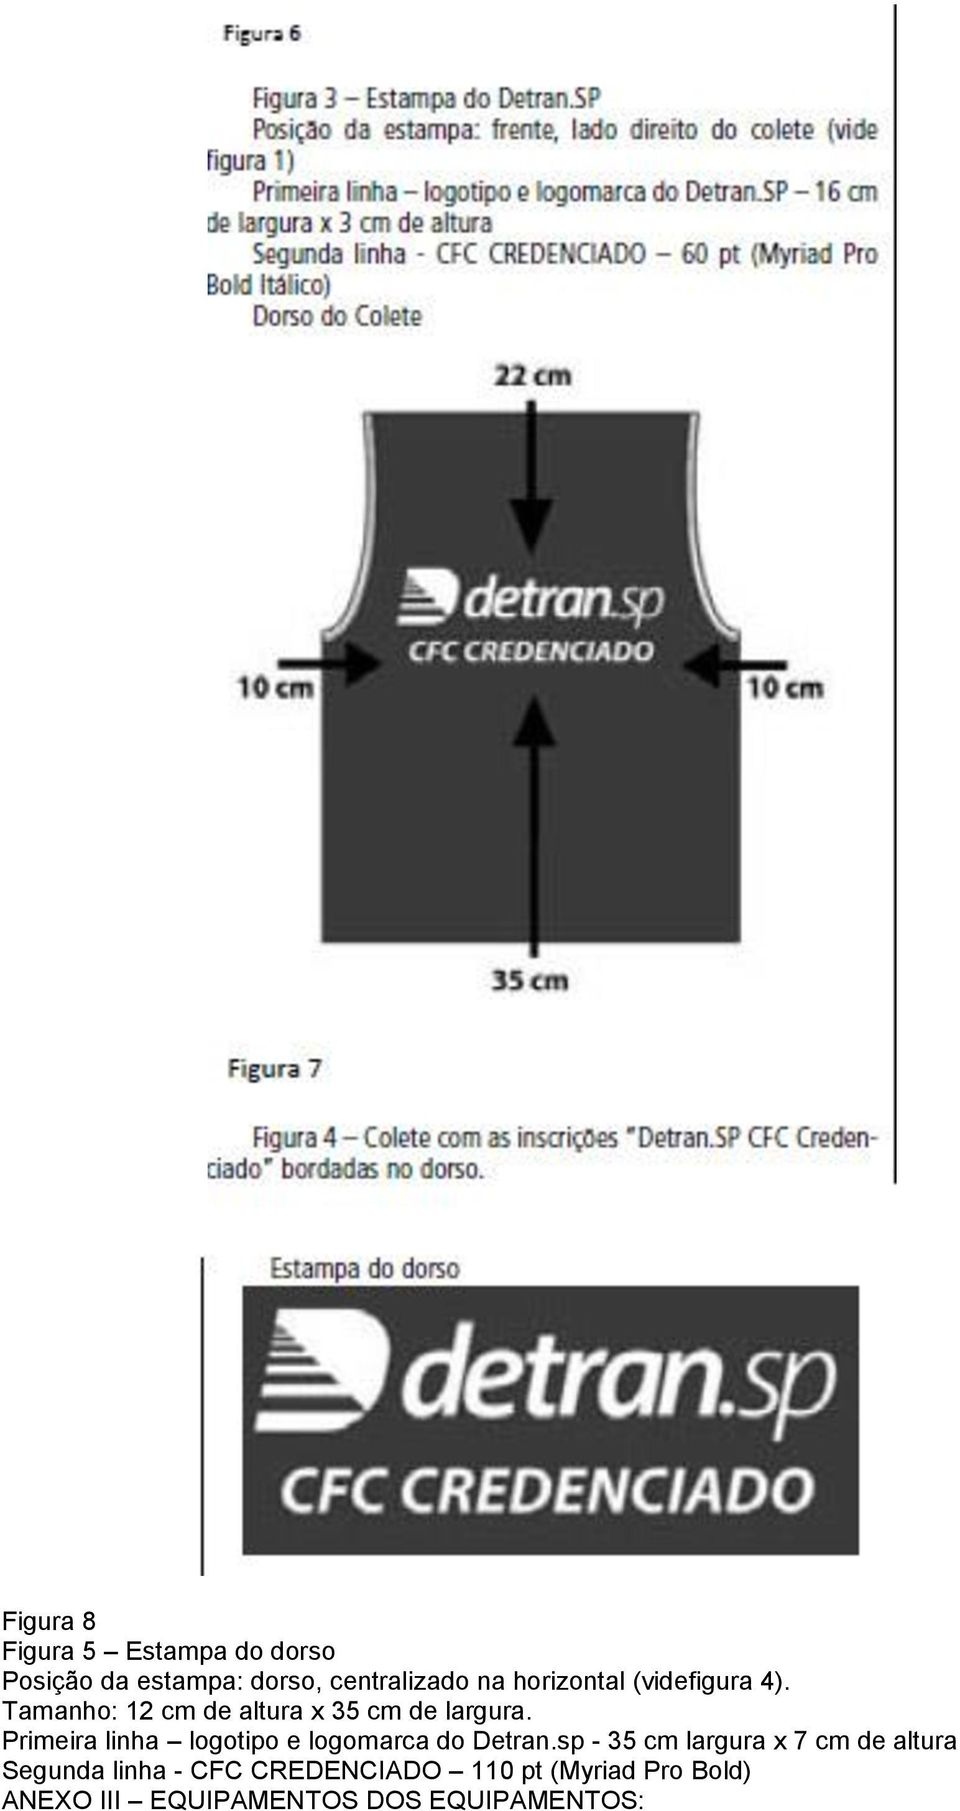 Primeira linha logotipo e logomarca do Detran.